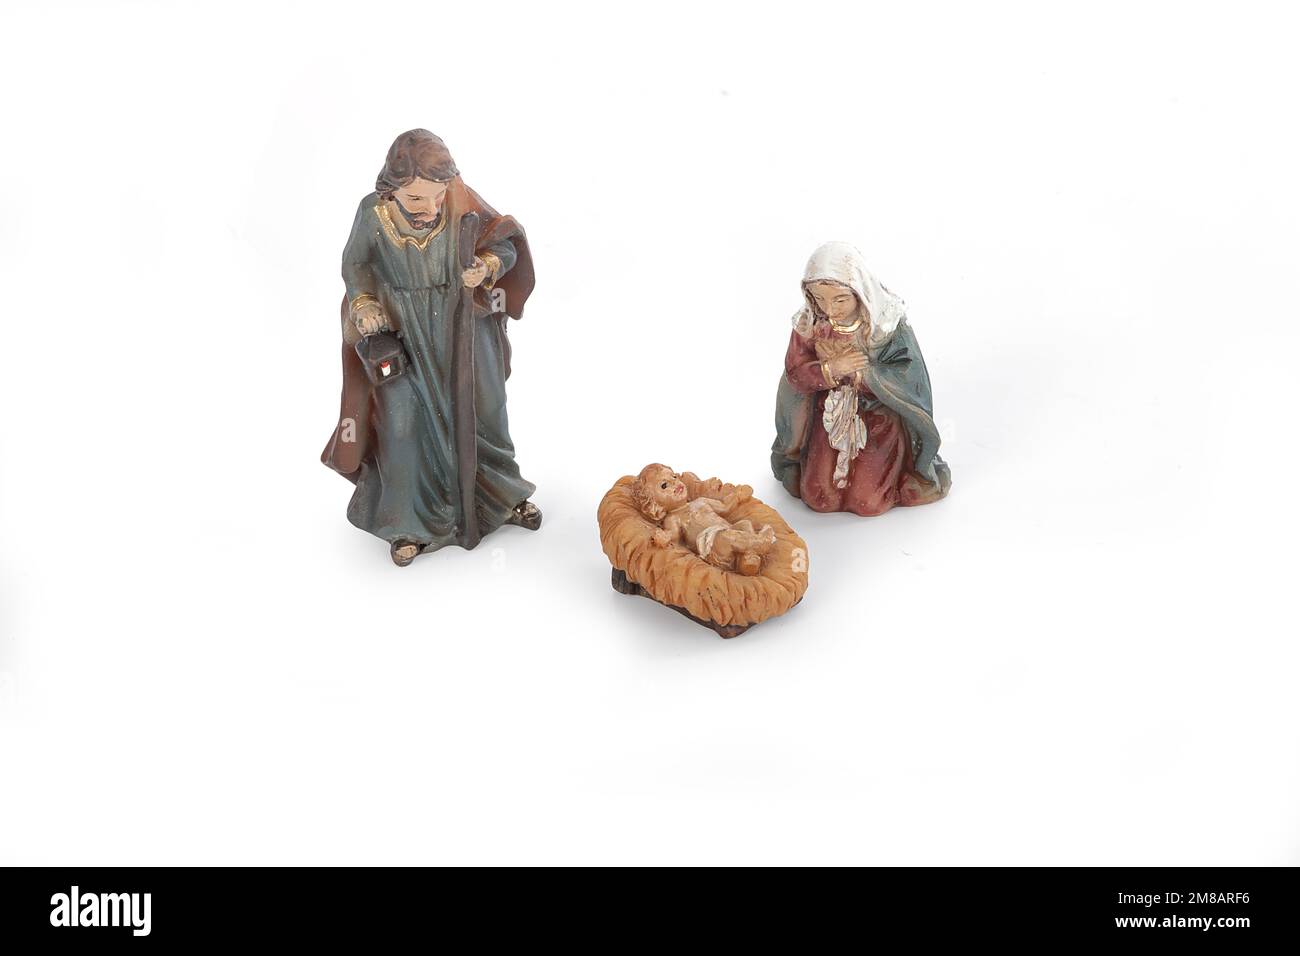 Statues de la Nativité du Ensemble de scène Naissance de Jésus Figurine  Figure religieuse catholique Sculpture en résine pour A